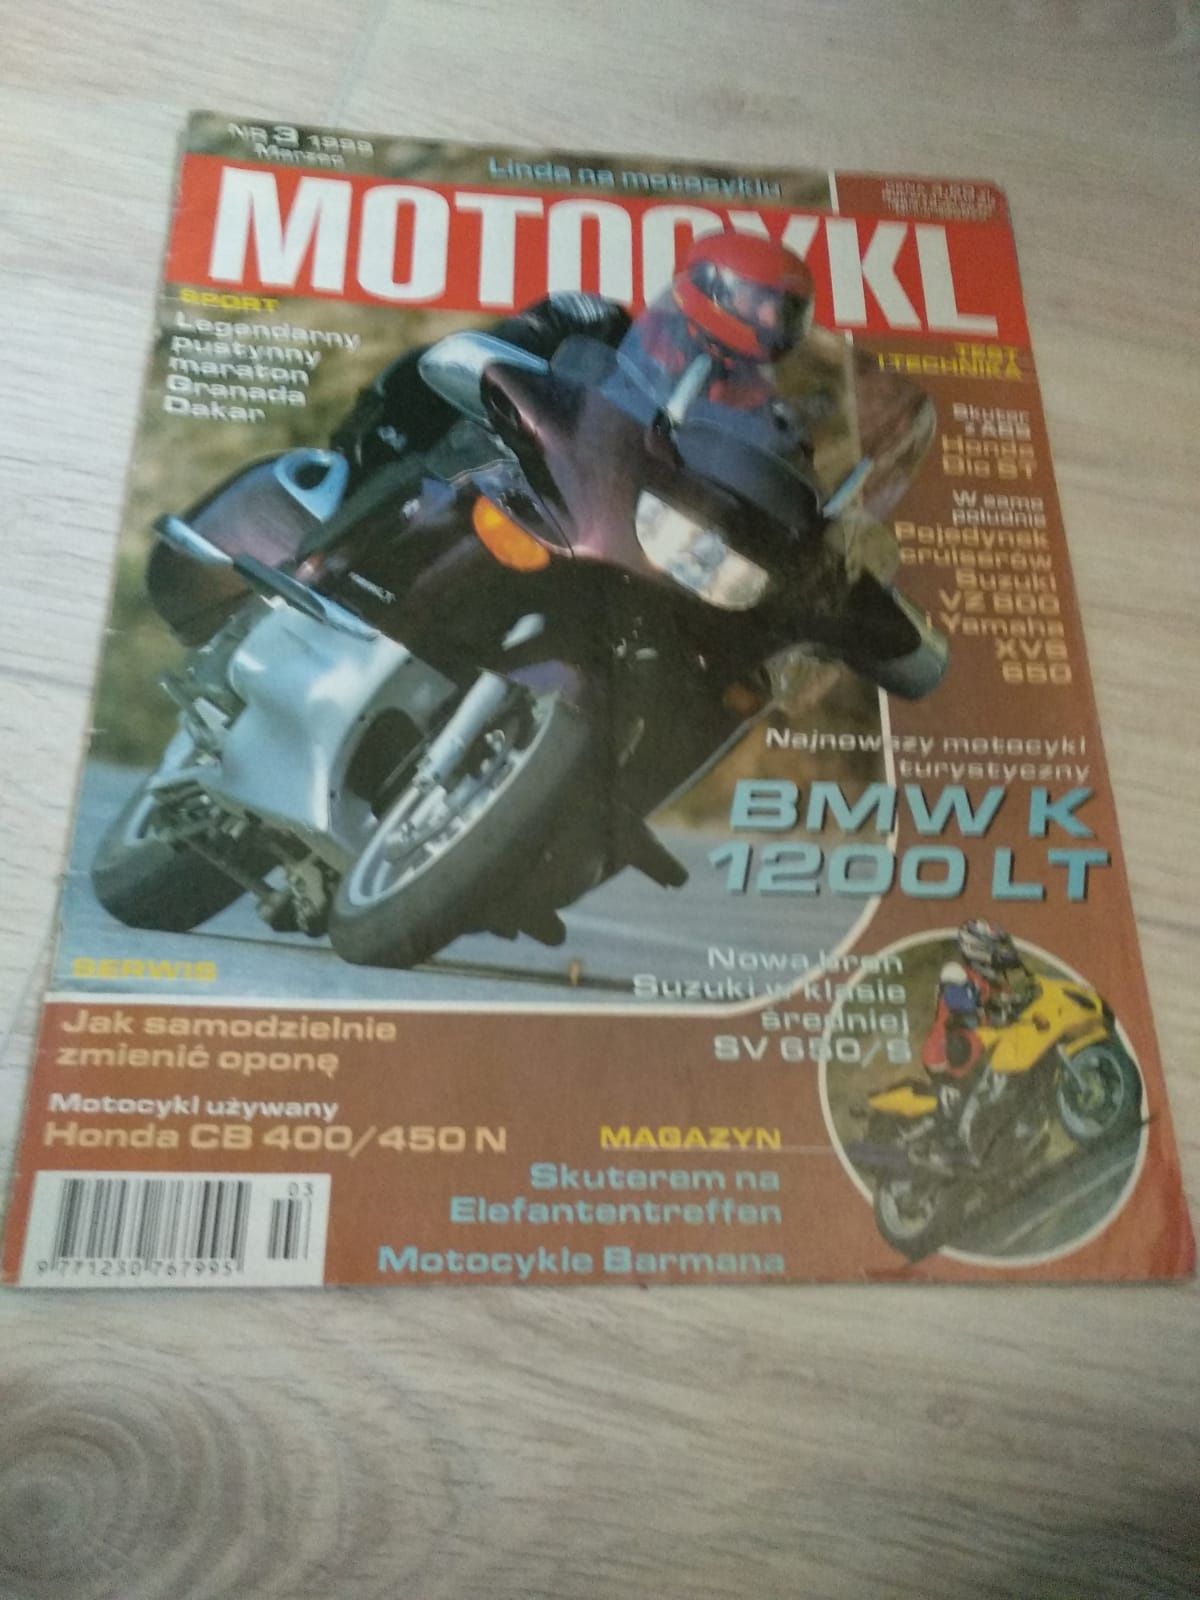 Gazeta, czasopismo, magazyny motocyklowy marzec 1999